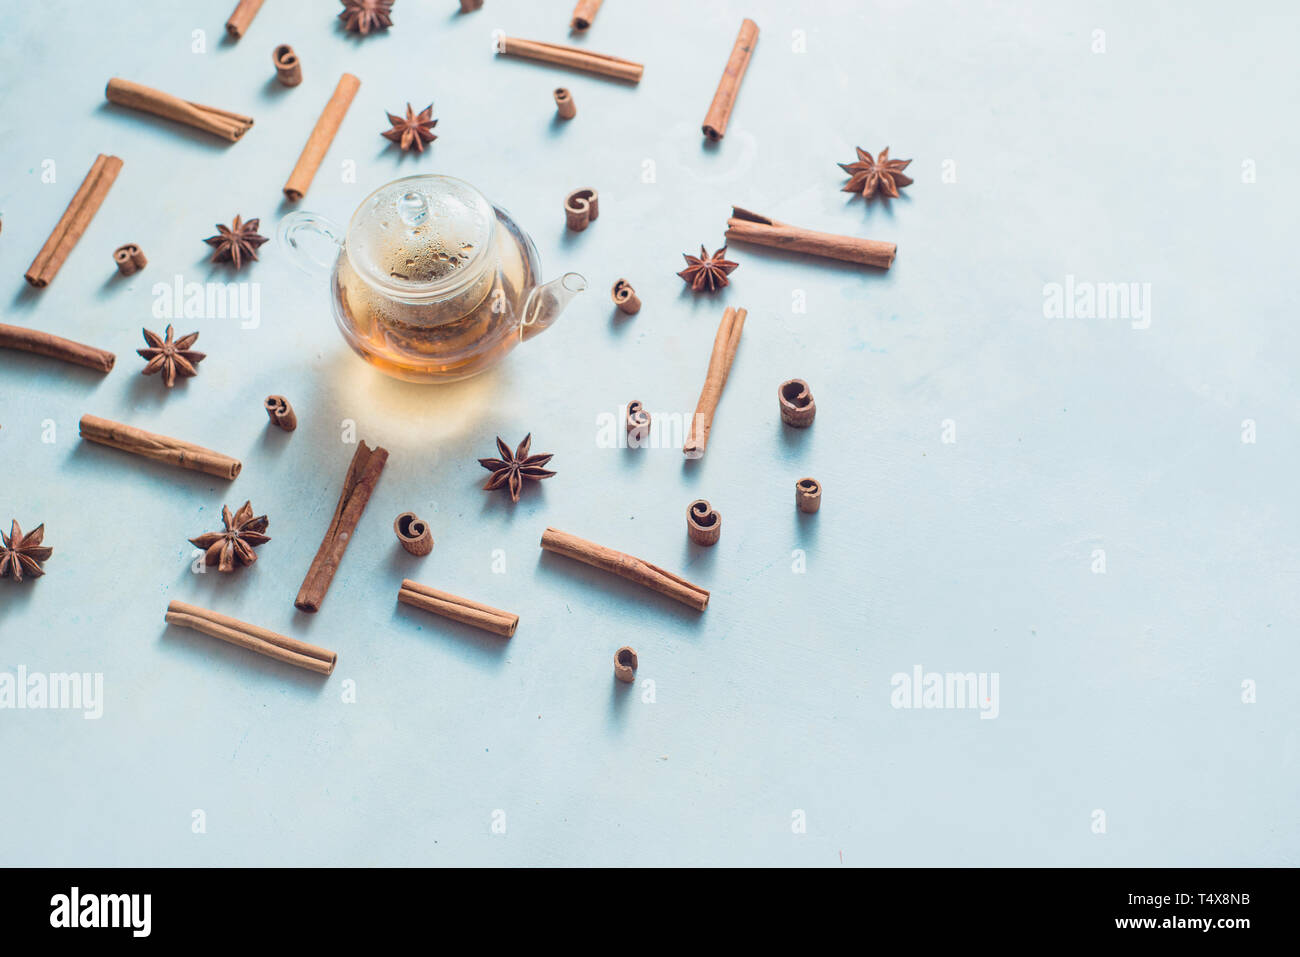 Kreative Kaffee mit Zimt, Anis Sterne, Teekanne und Tee klangschalen auf einen weißen Hintergrund mit kopieren. Heißes Getränk kreativer Kopf. Stockfoto